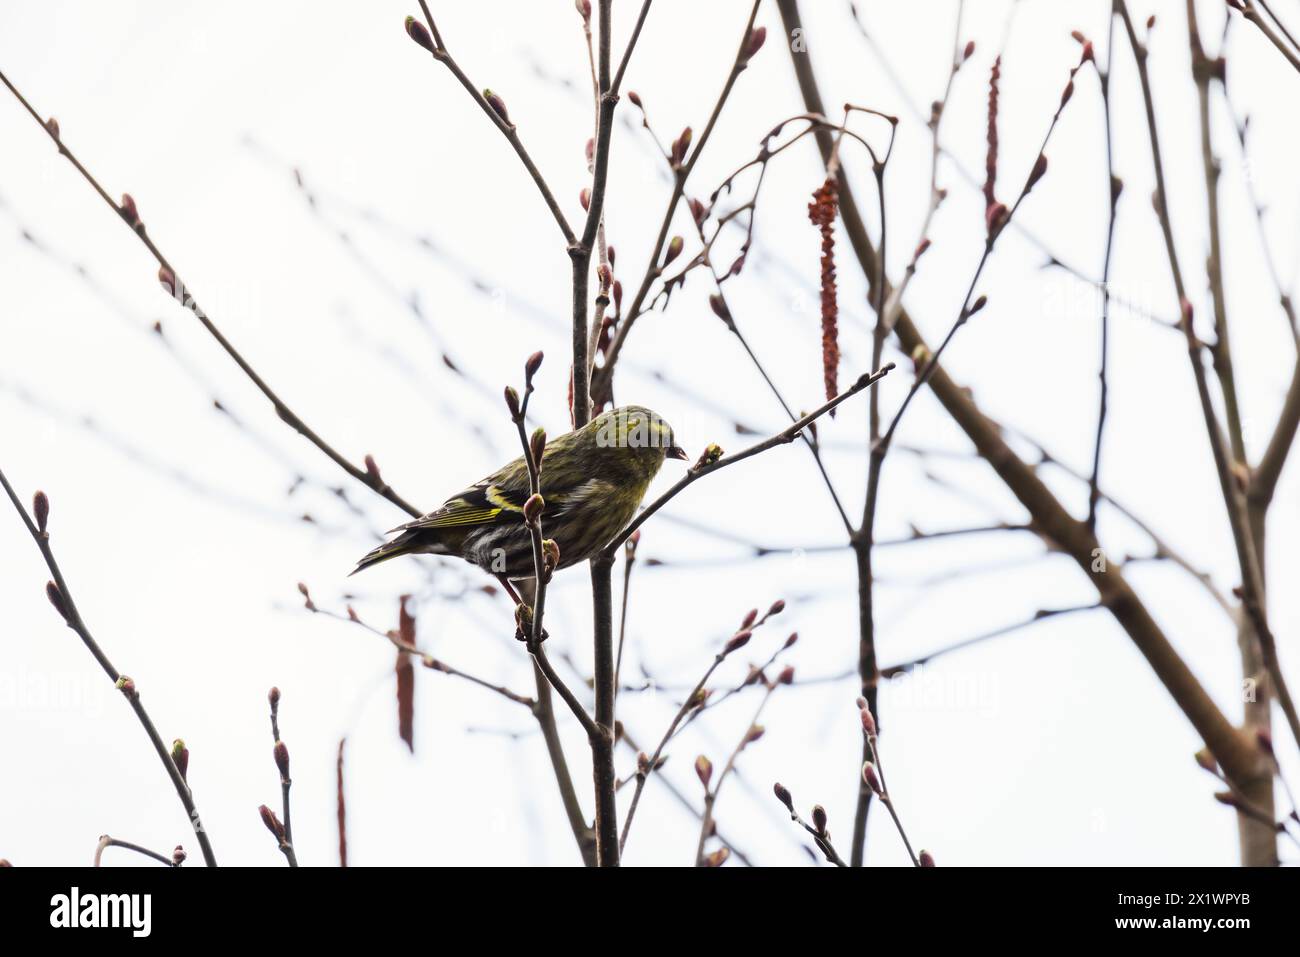 Gelber grauer Vogel ist auf dem Ast. Der Eurasische Sisskin ist ein kleiner Passerinvogel aus der Familie der finken Fringillidae. Sie wird auch als Europäischer sisk bezeichnet Stockfoto